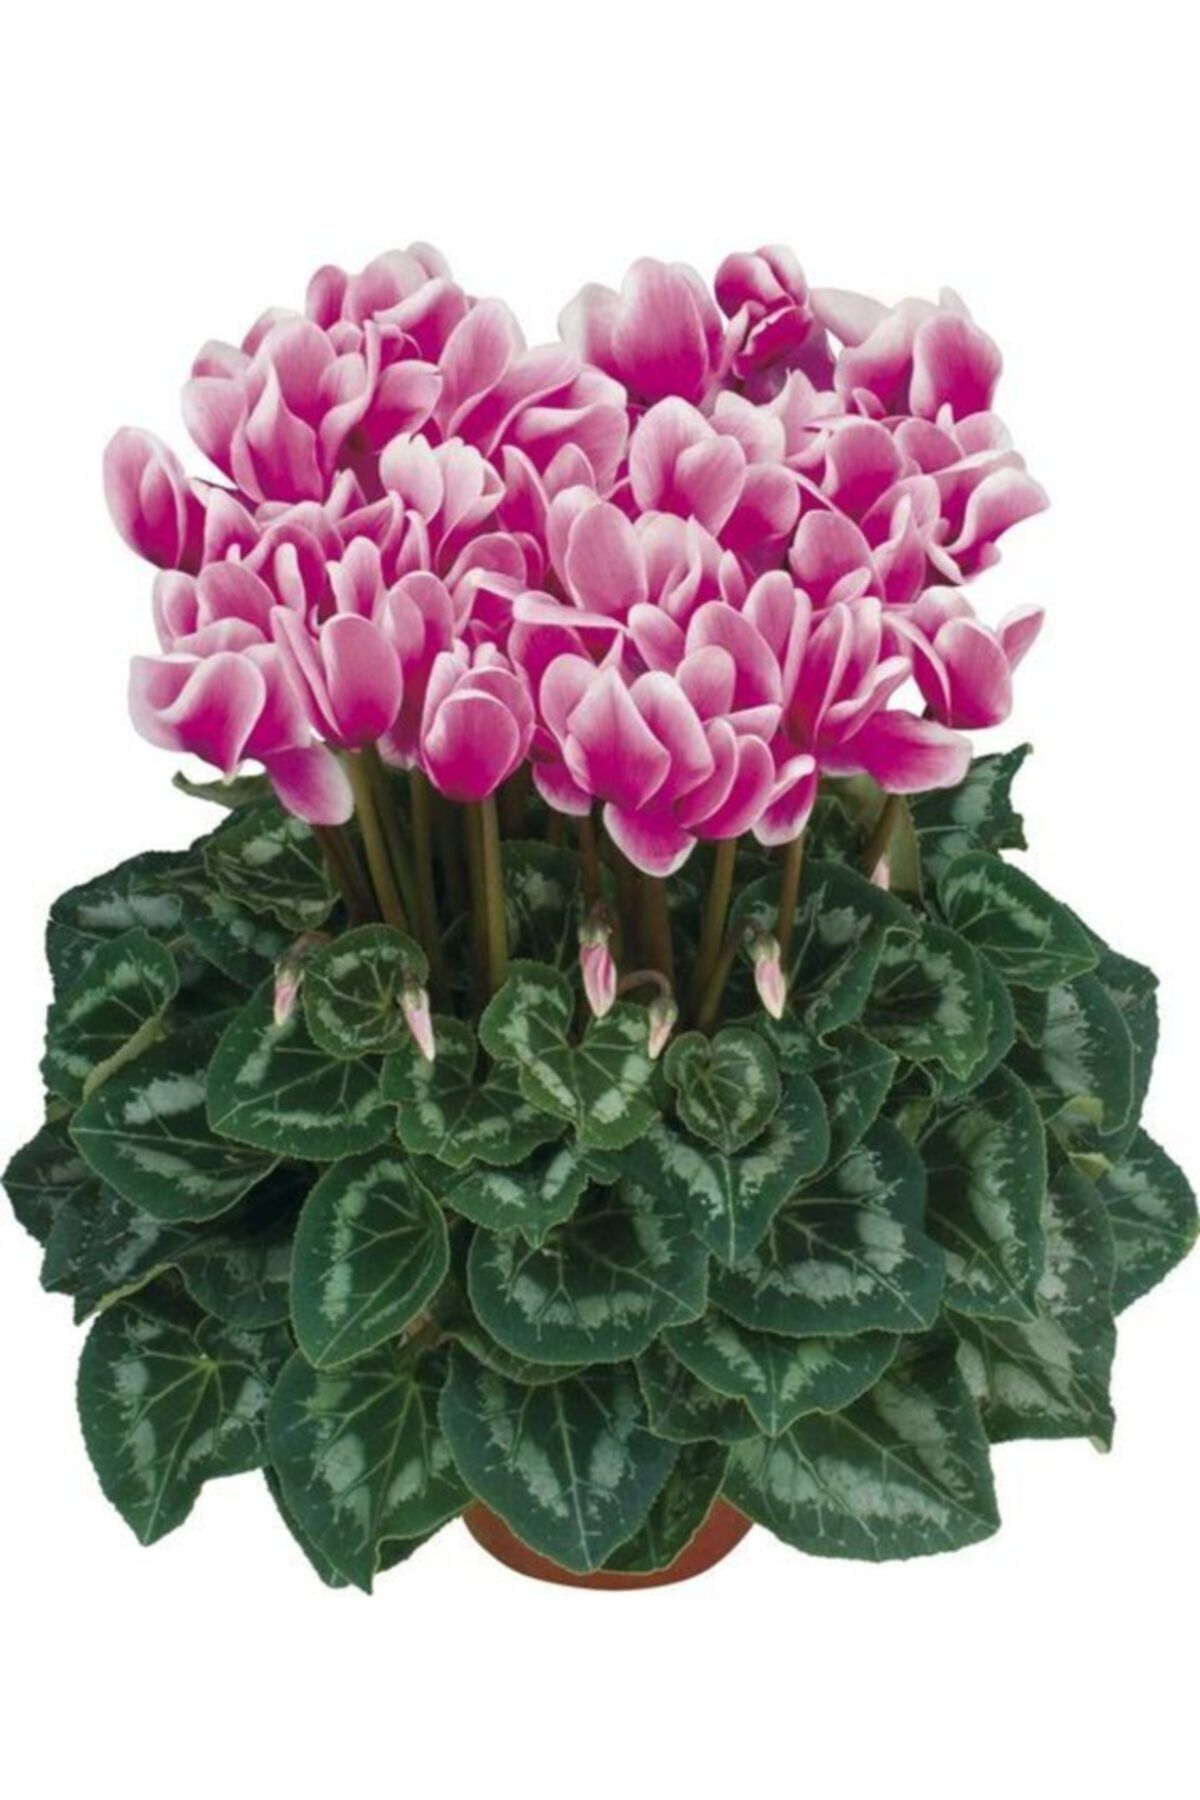 KAMONDO TOHUM 3 Adet Çift Renkli Sıklamen Çiçeği Soğanı